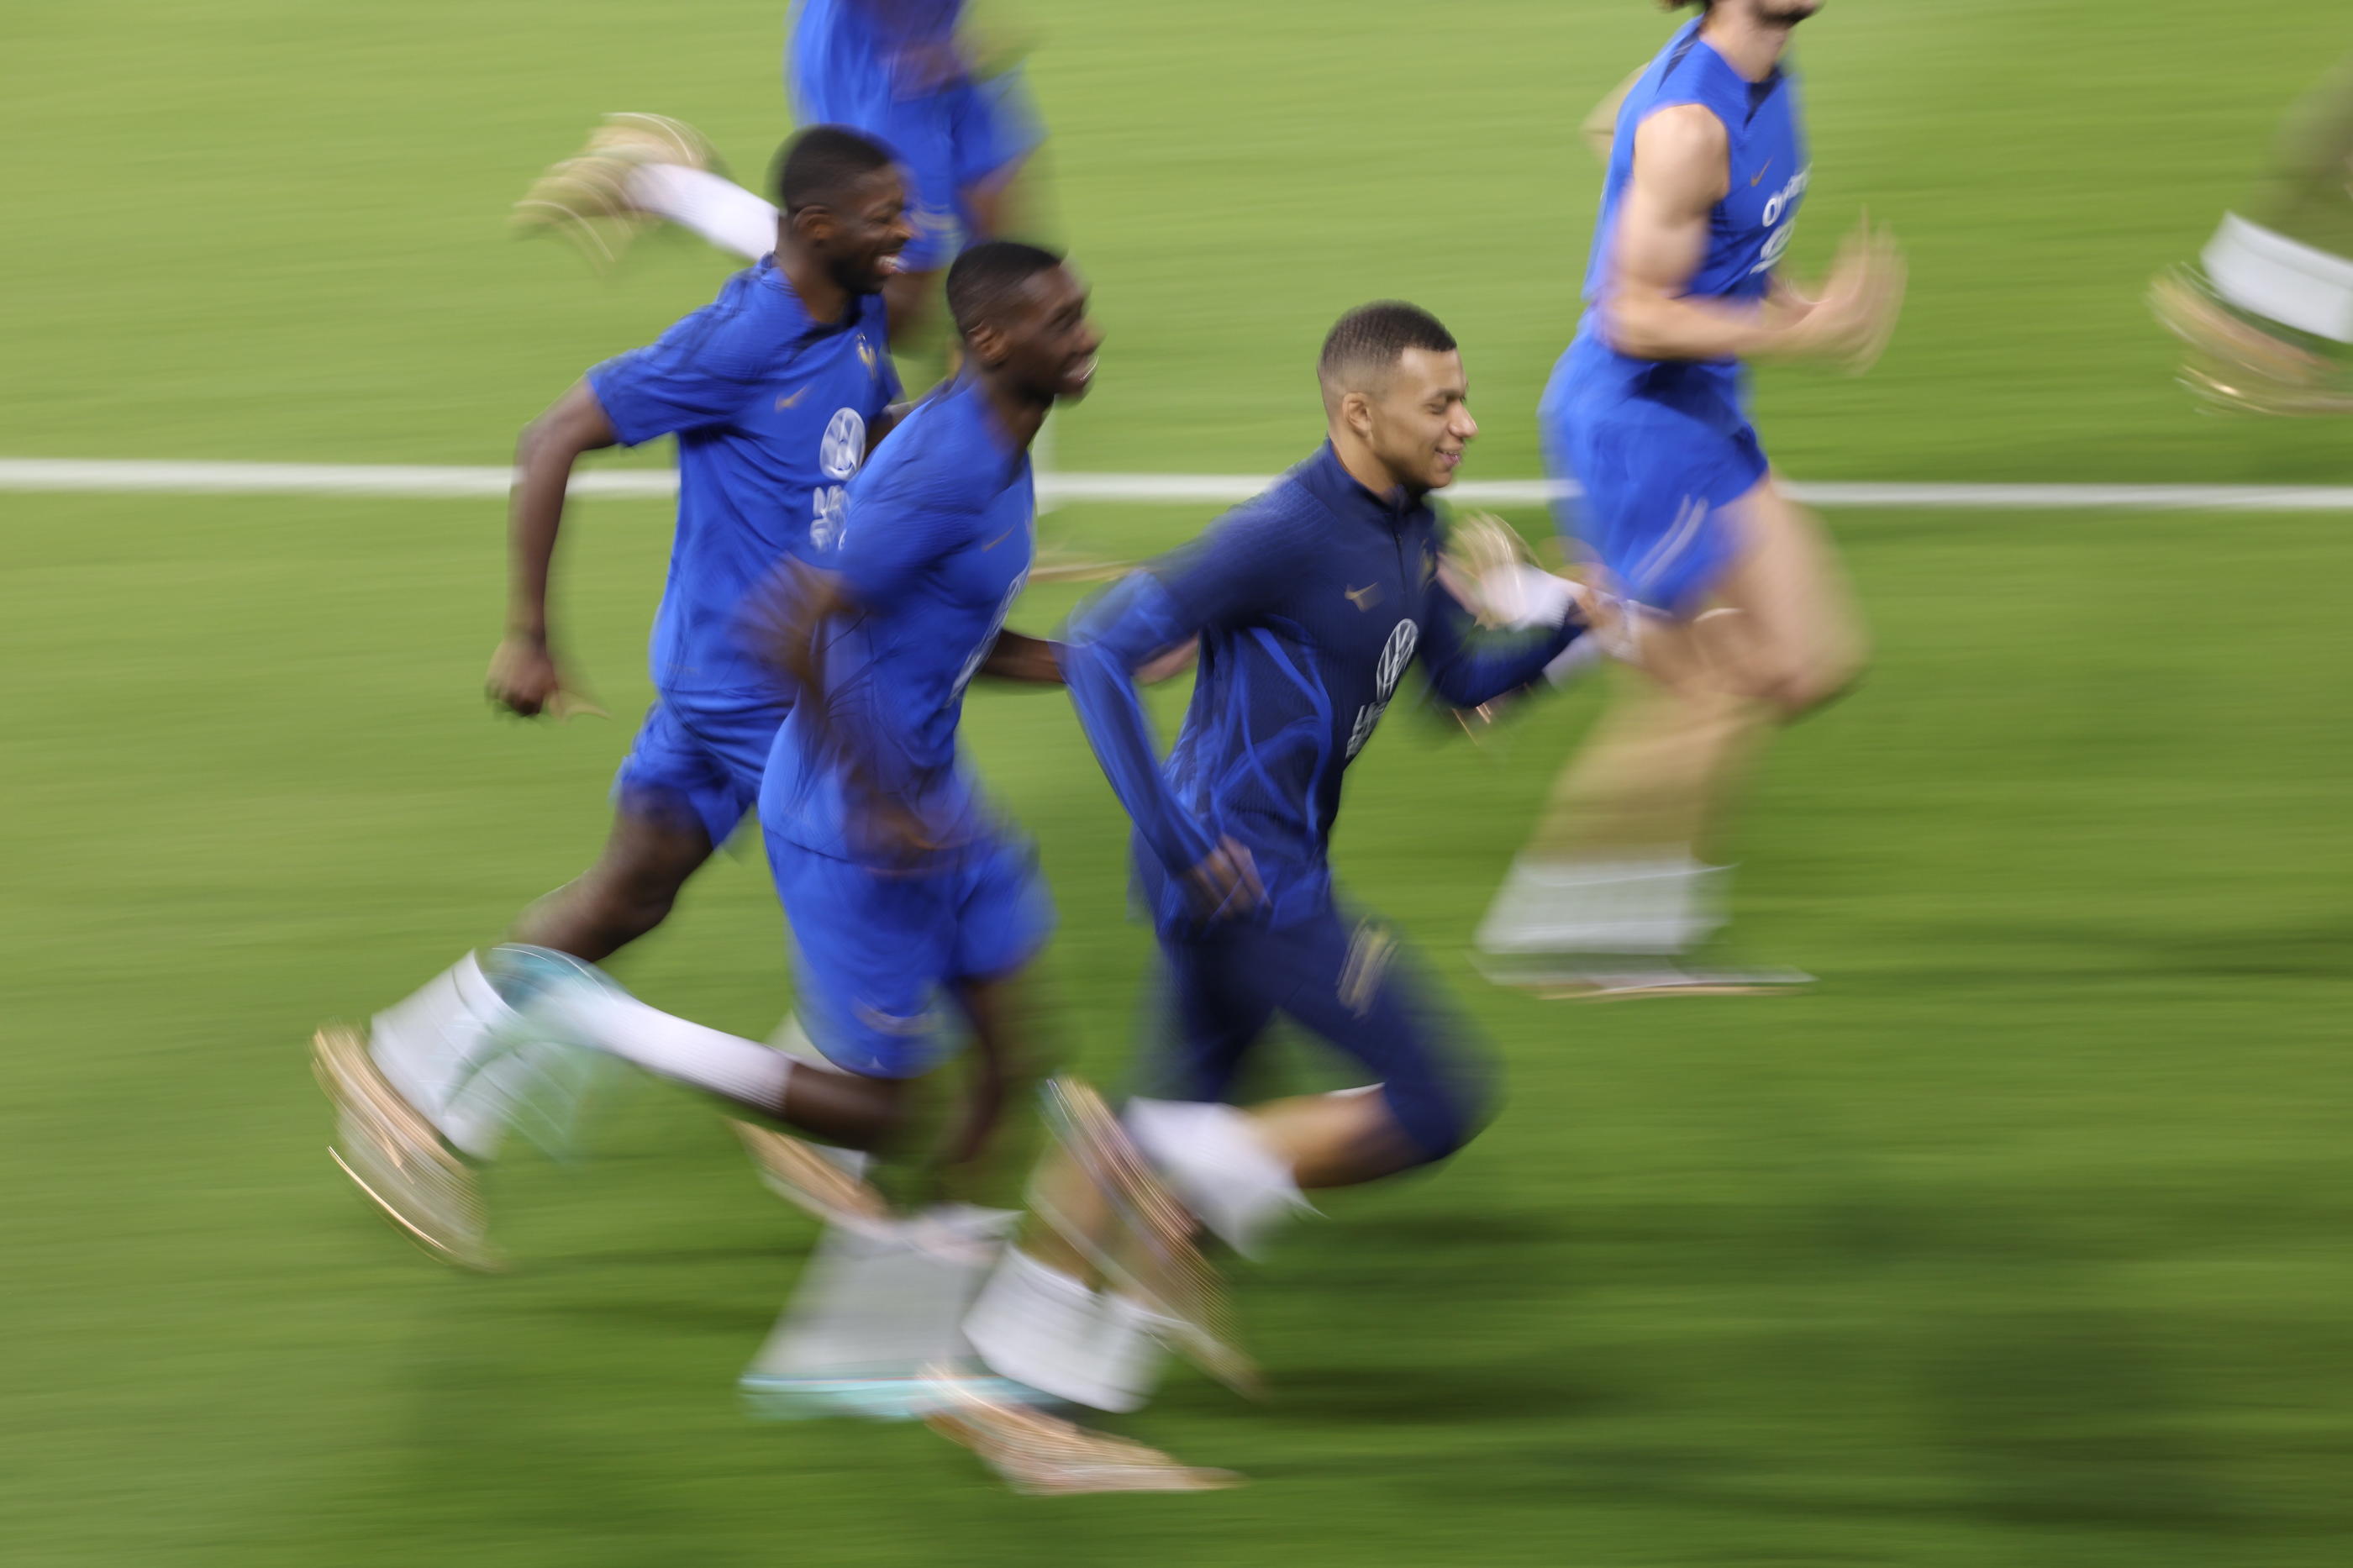 Portée par la vitesse et la science offensive de Kylian Mbappé, l'équipe de France tentera de décrocher face à l'Argentine une troisième étoile de championne du monde, la deuxième d'affilée. LP/Arnaud Journois



PHOTO LE PARISIEN / ARNAUD JOURNOIS